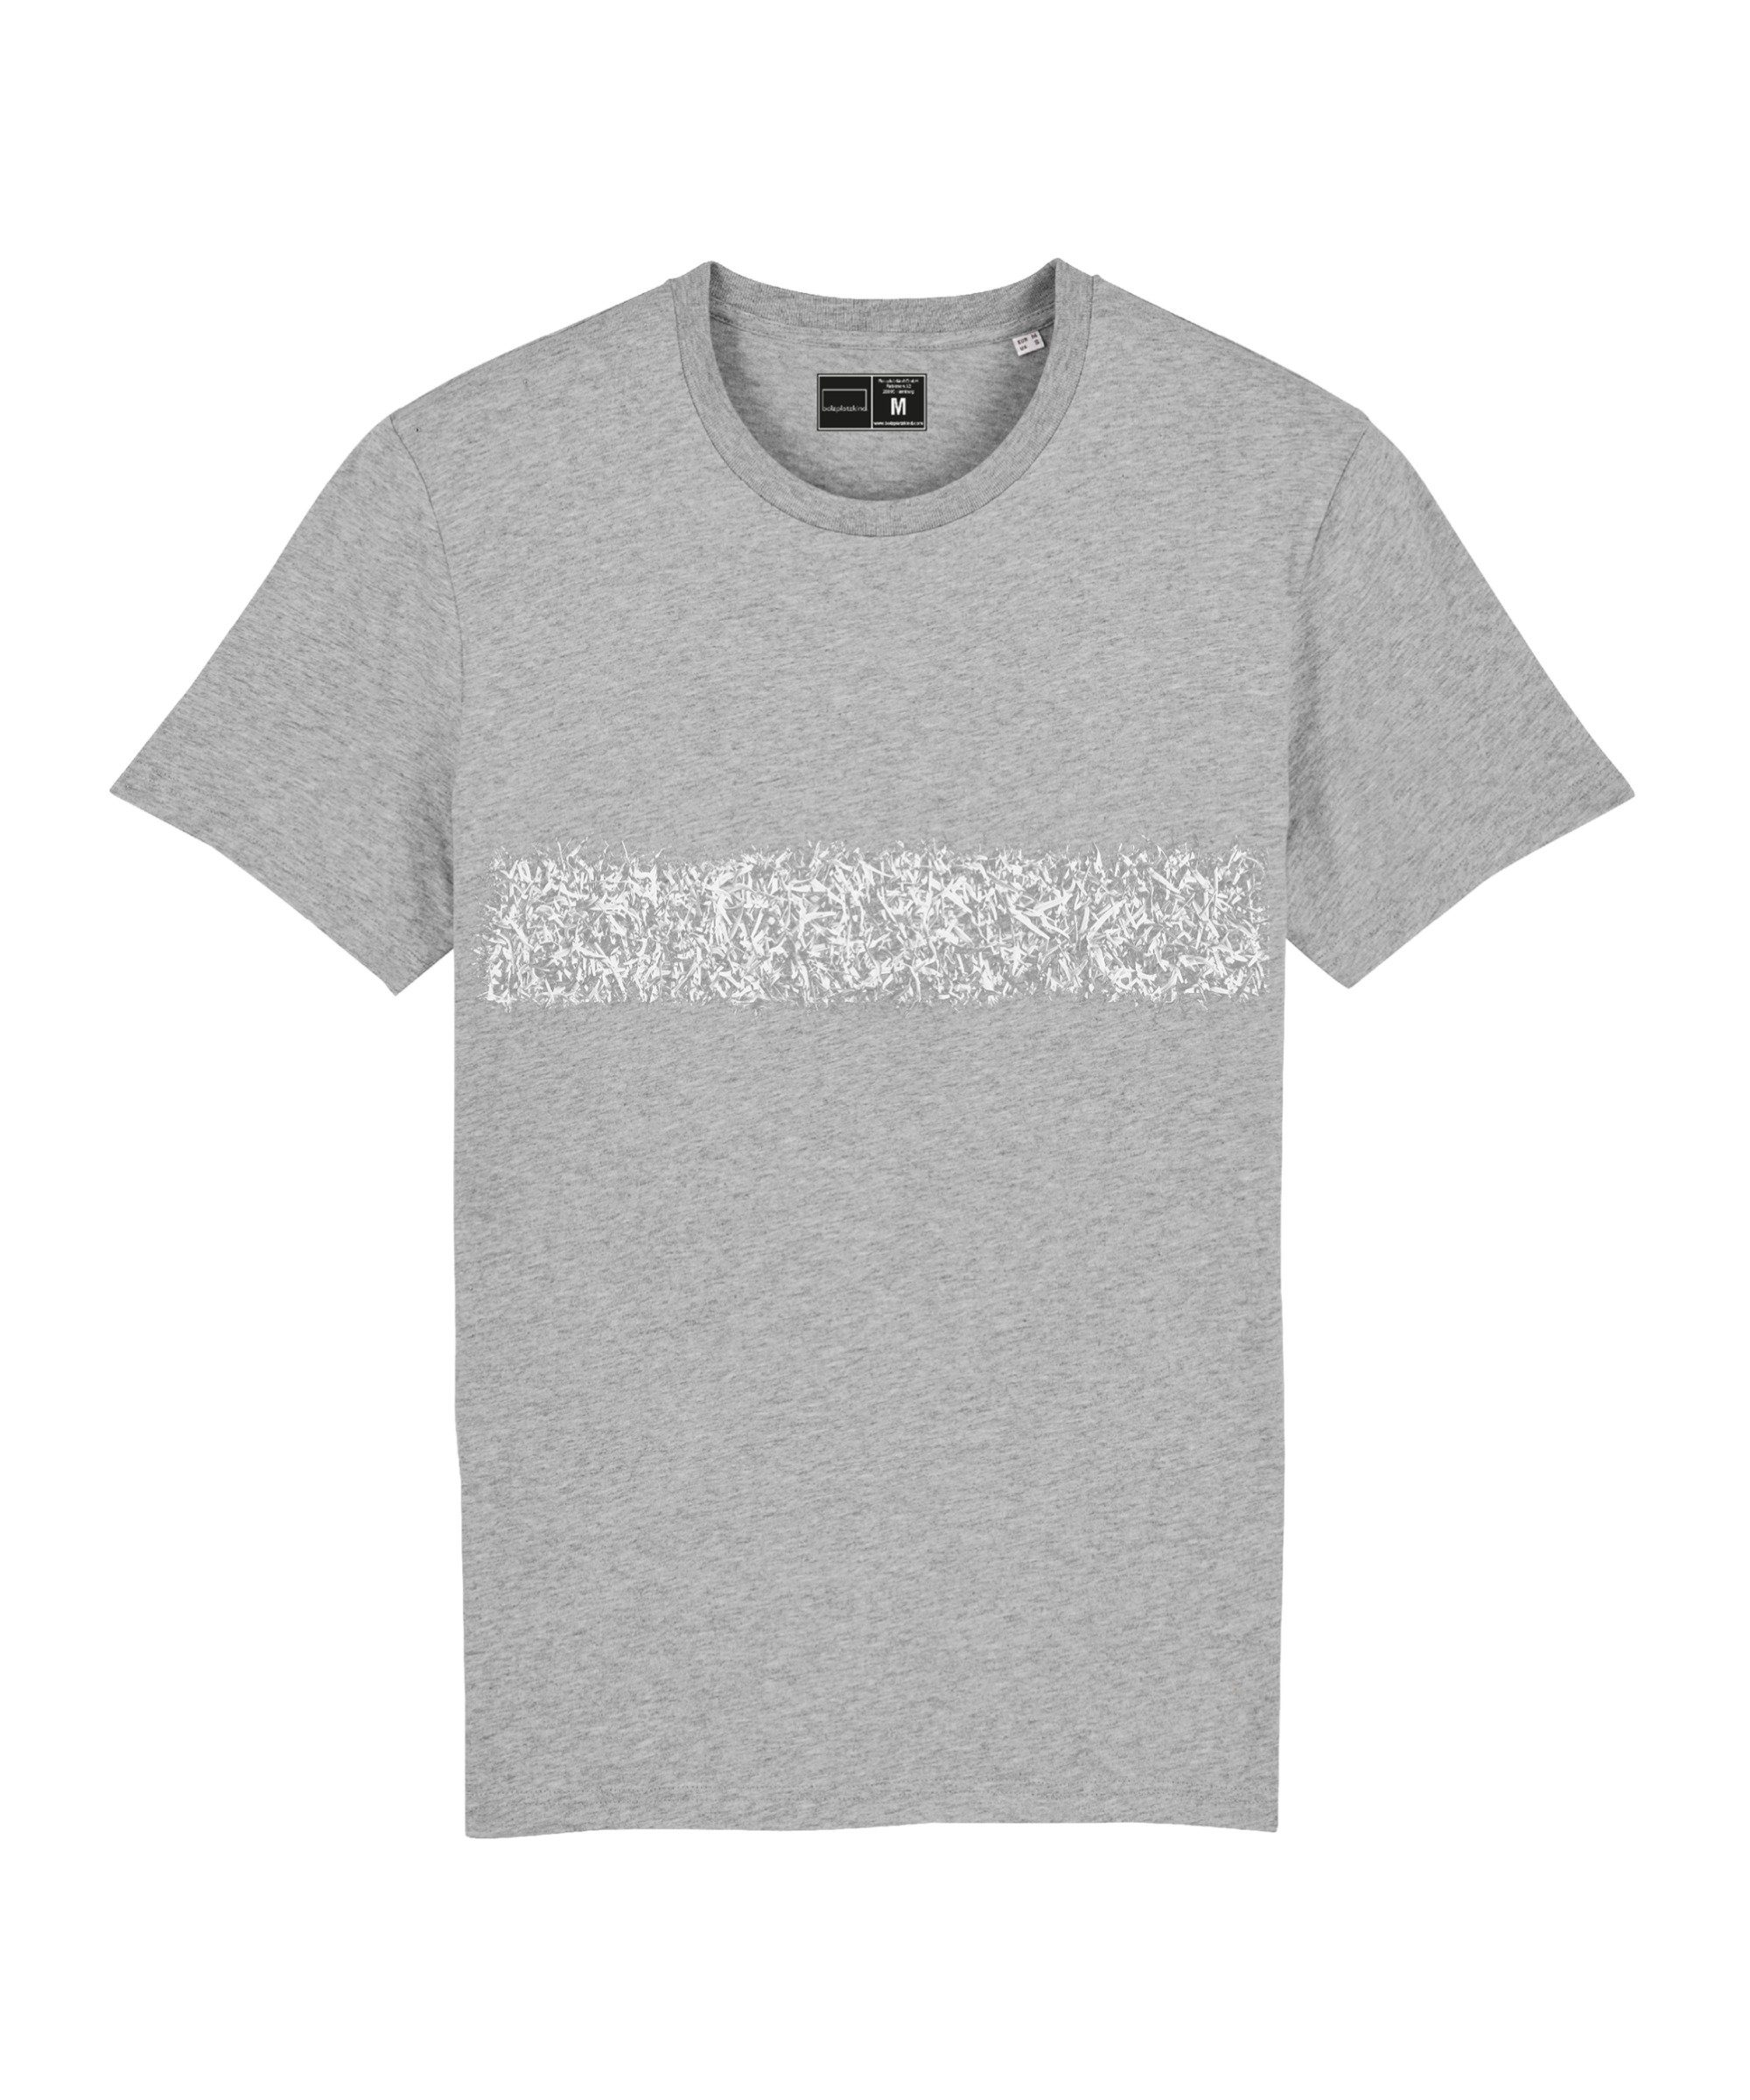 Bolzplatzkind T-Shirt "Line-Up" T-Shirt Nachhaltiges Produkt grau